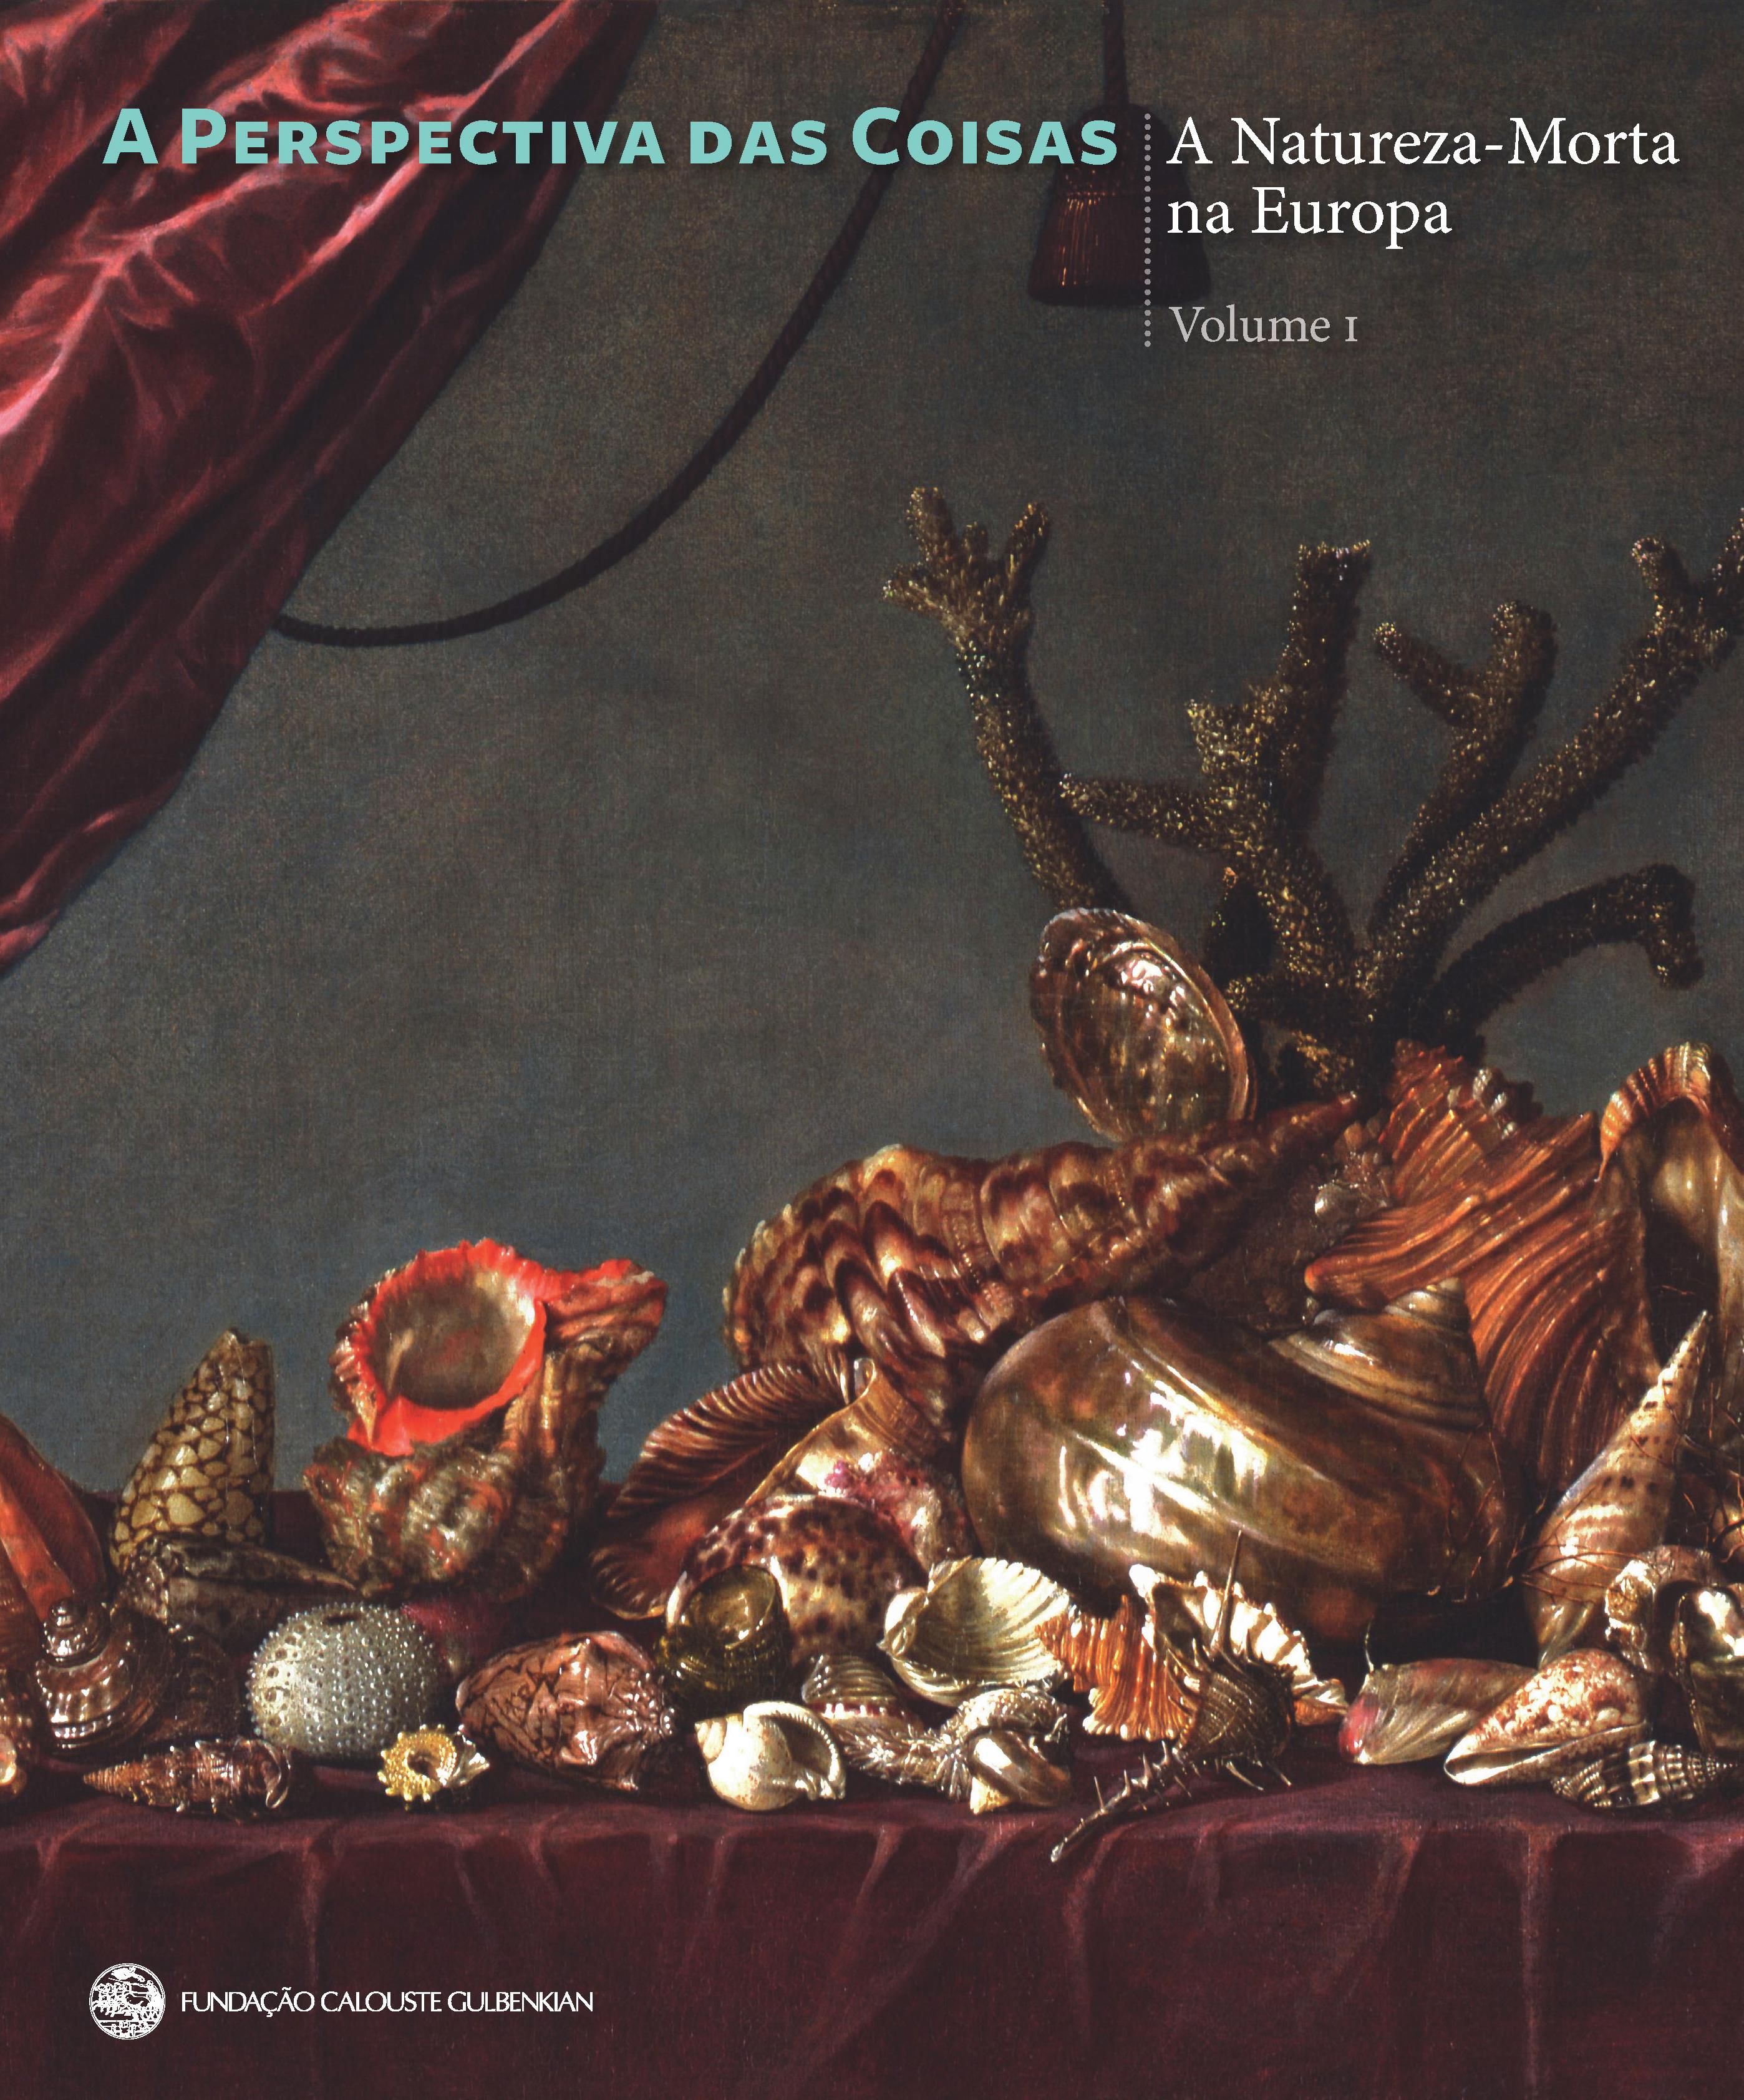 A Perspectiva das Coisas. A Natureza-Morta na Europa. Primeira Parte: Séculos XVII – XVIII